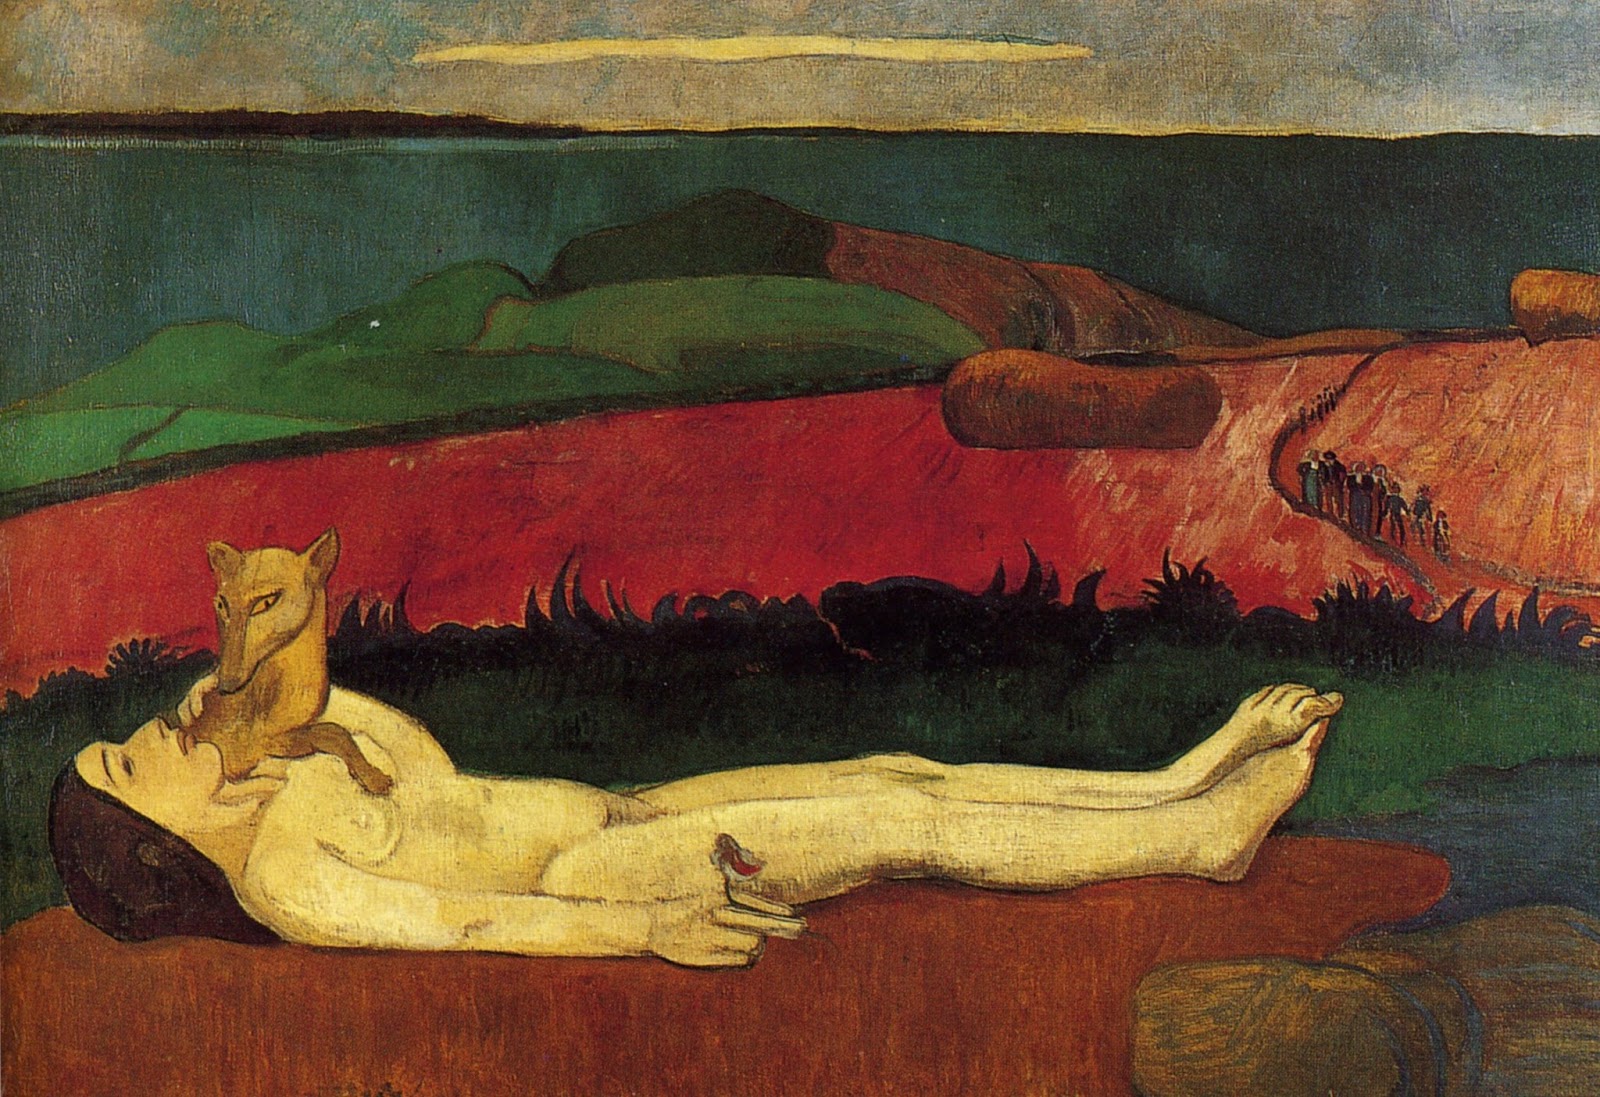 Paul+Gauguin-1848-1903 (388).jpg